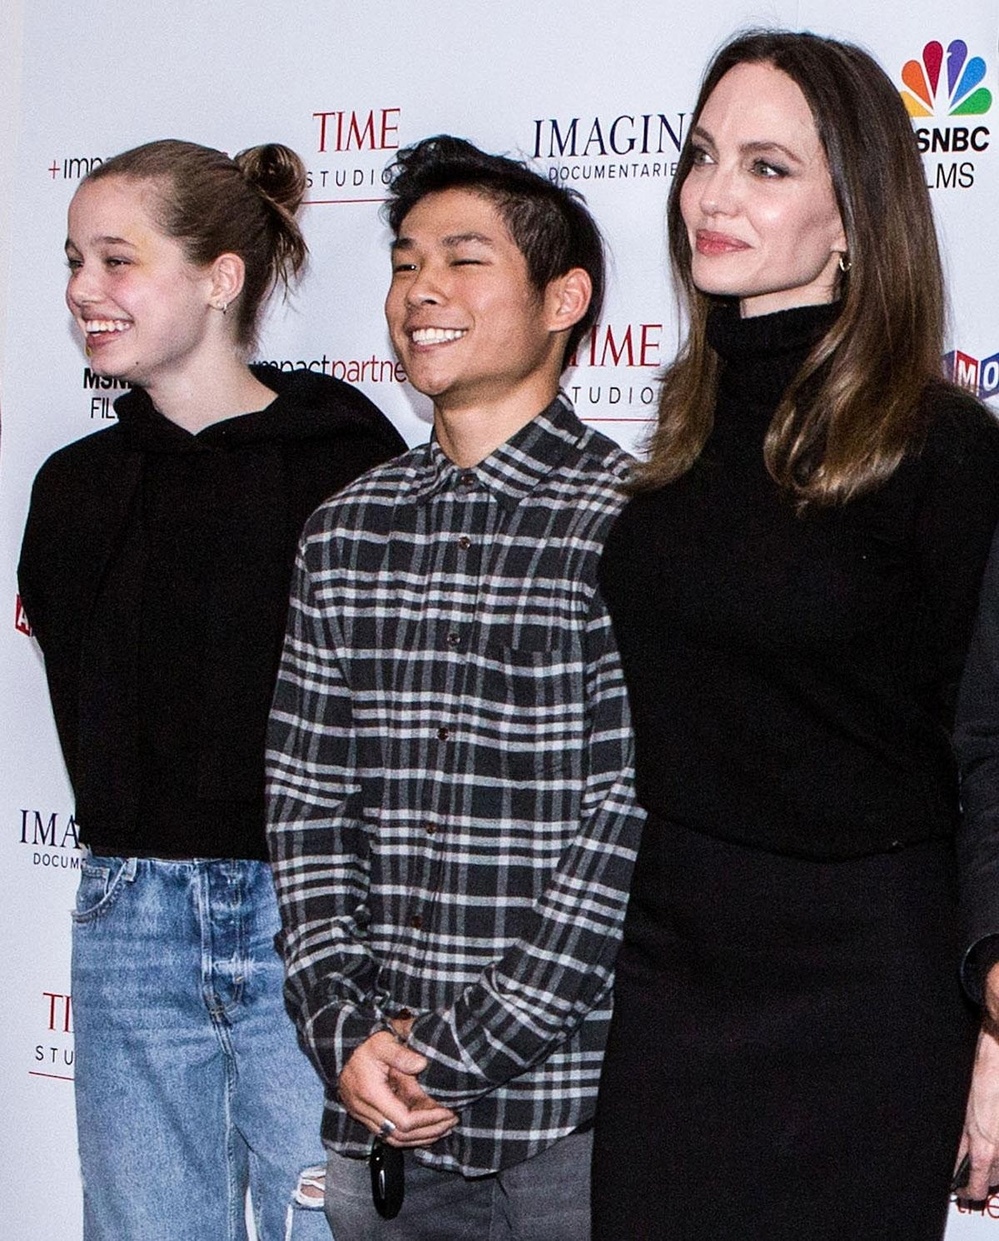  
Pax Thiên xuất hiện bên cạnh Angelina Jolie và Shiloh Jolie-Pitt trong một sự kiện. (Ảnh: NBC)